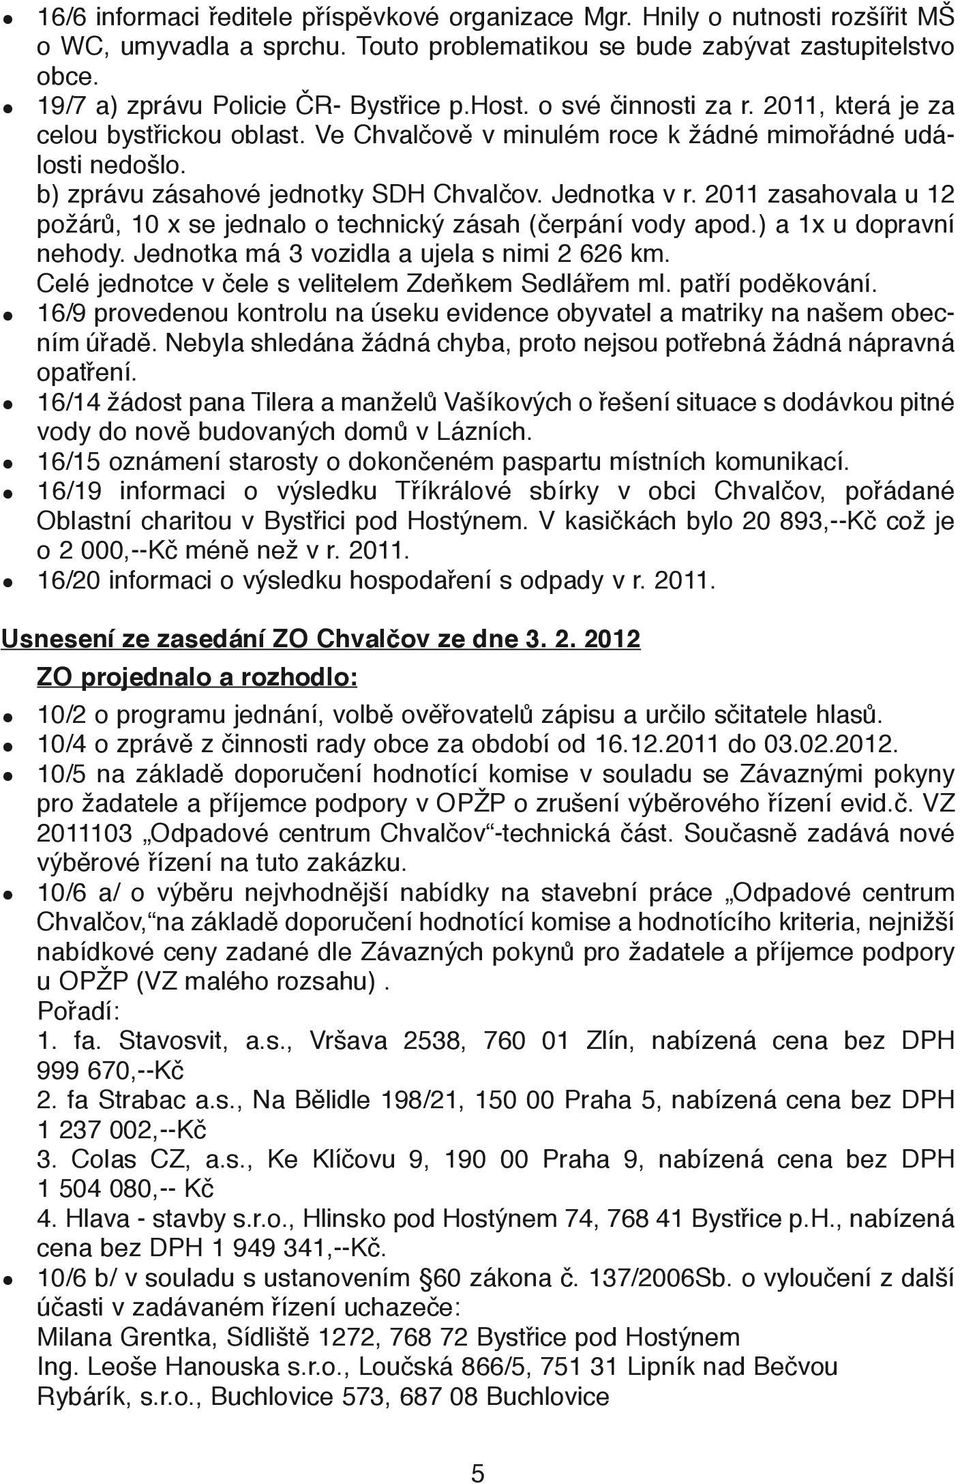 b) zprávu zásahové jednotky SDH Chvalčov. Jednotka v r. 2011 zasahovala u 12 požárů, 10 x se jednalo o technický zásah (čerpání vody apod.) a 1x u dopravní nehody.